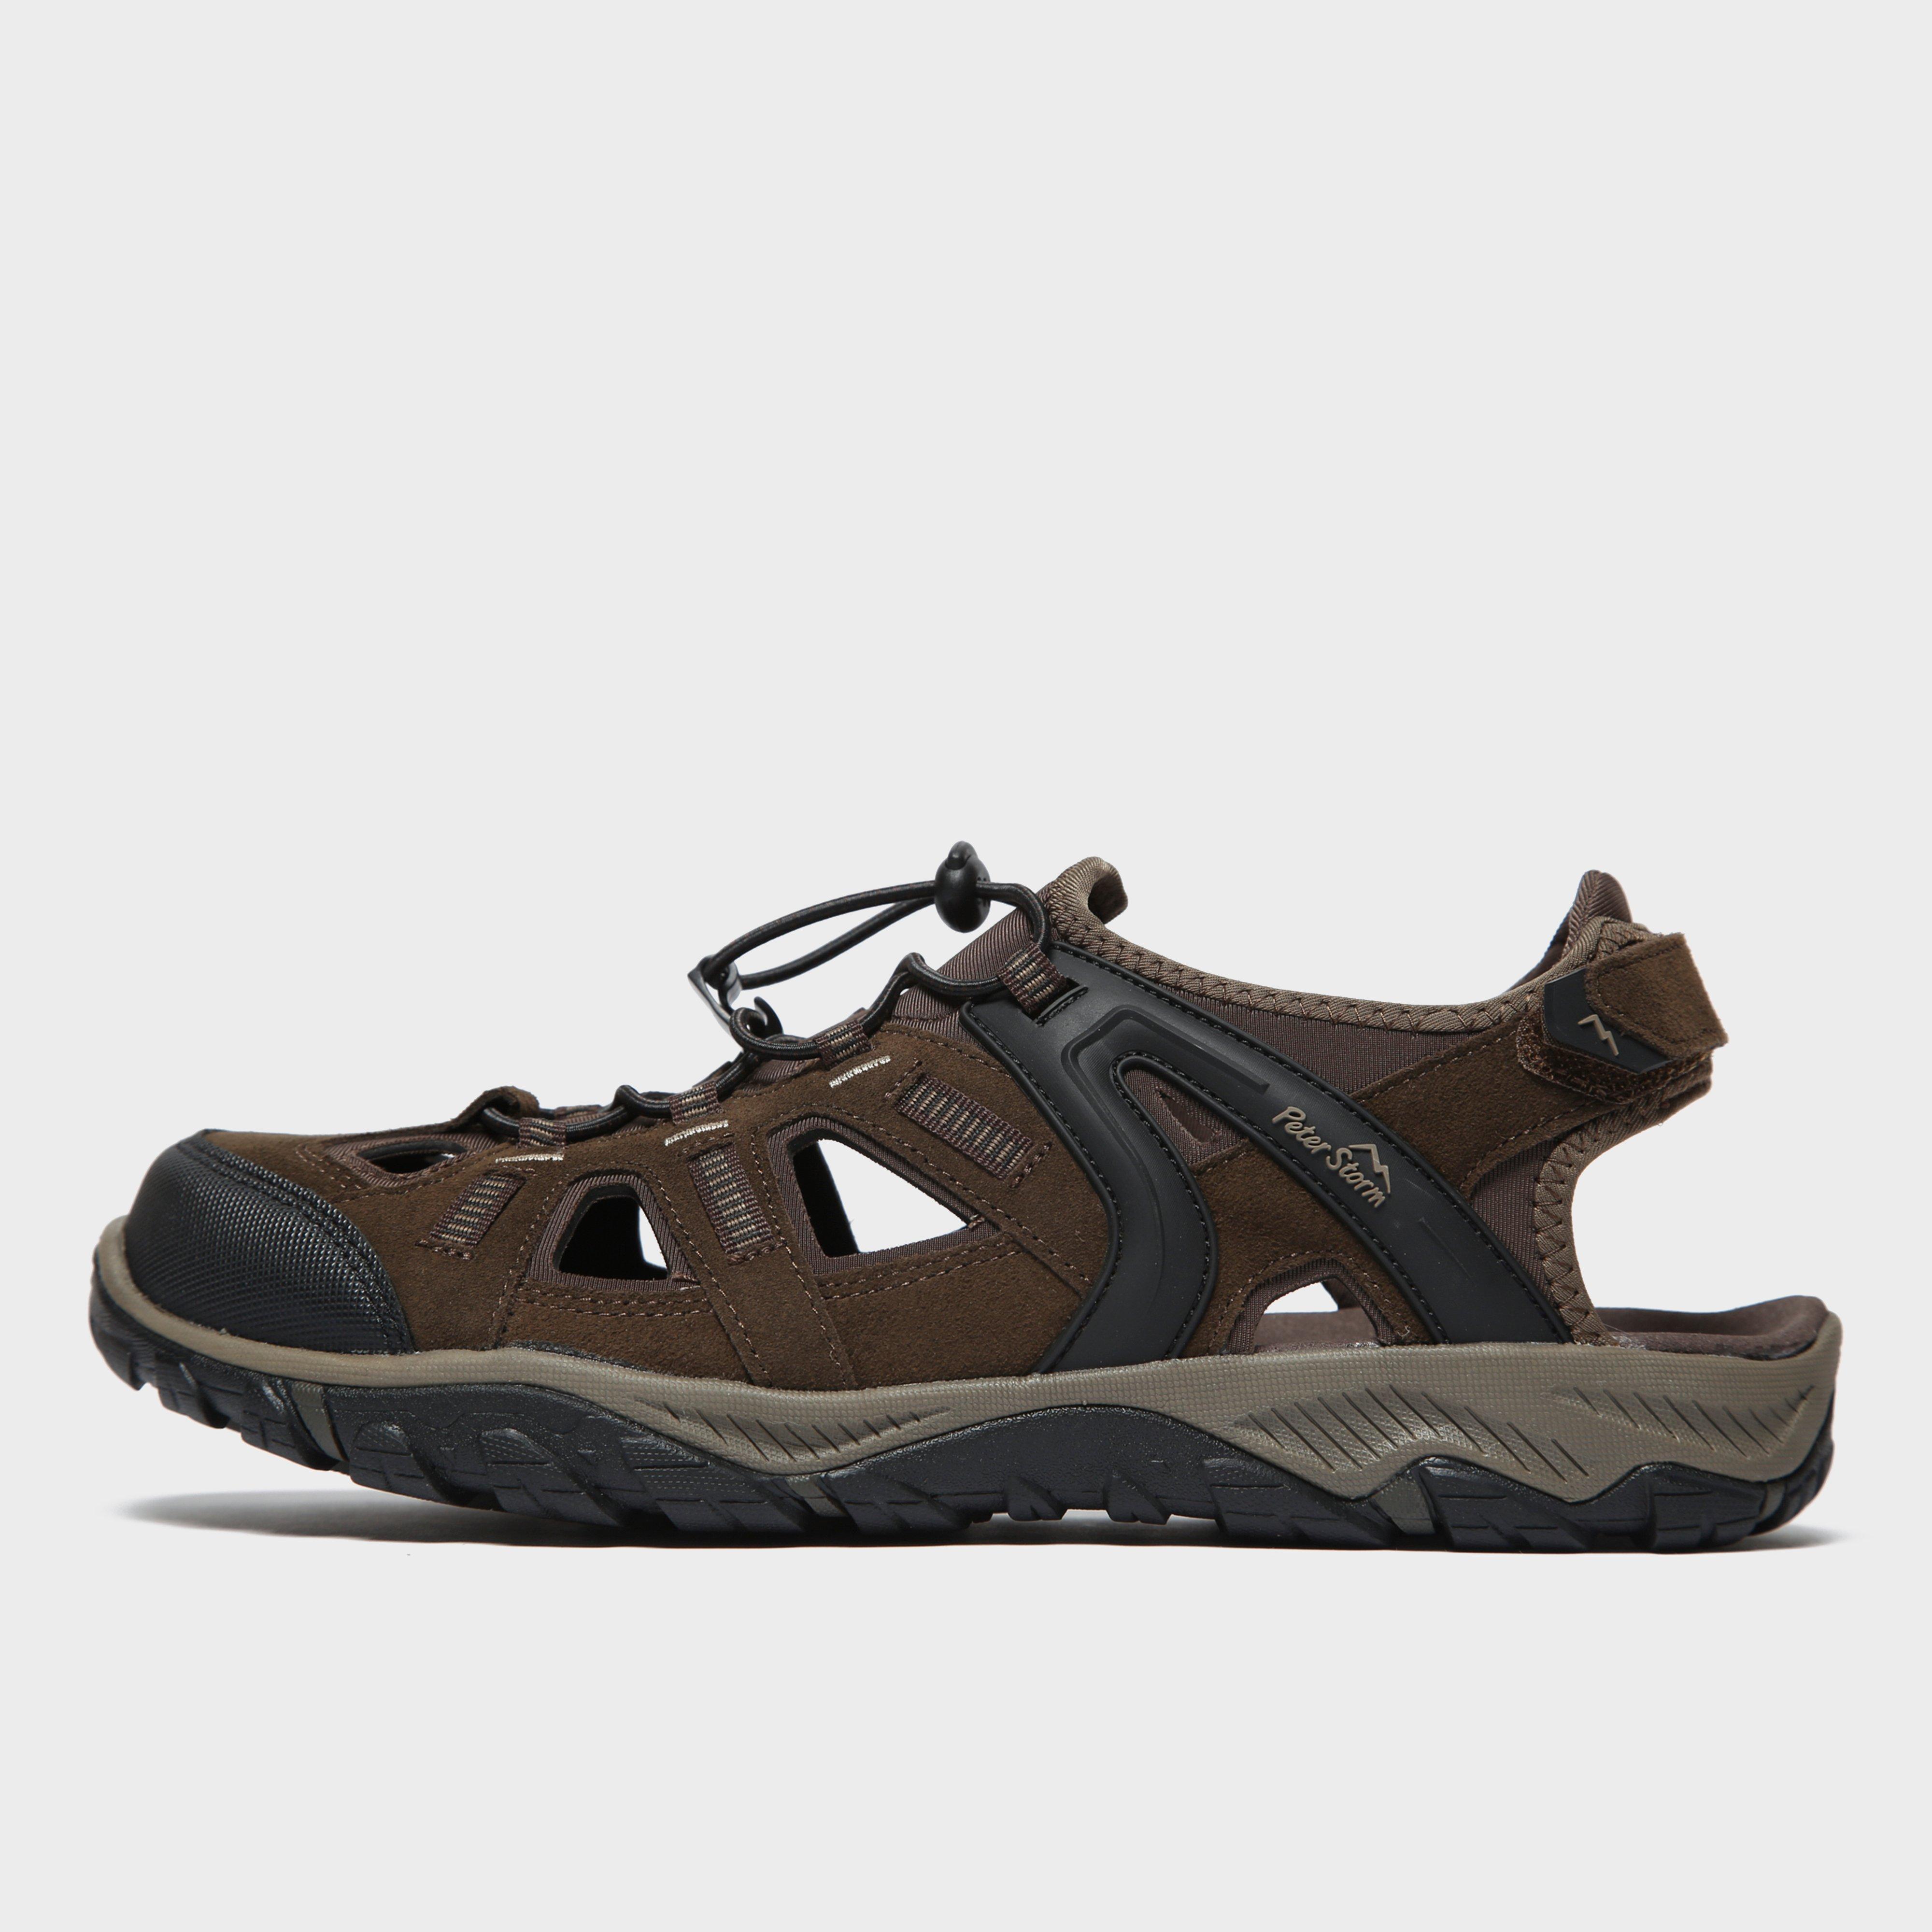 Peter Storm Men's Solva Walking Sandals, Brown